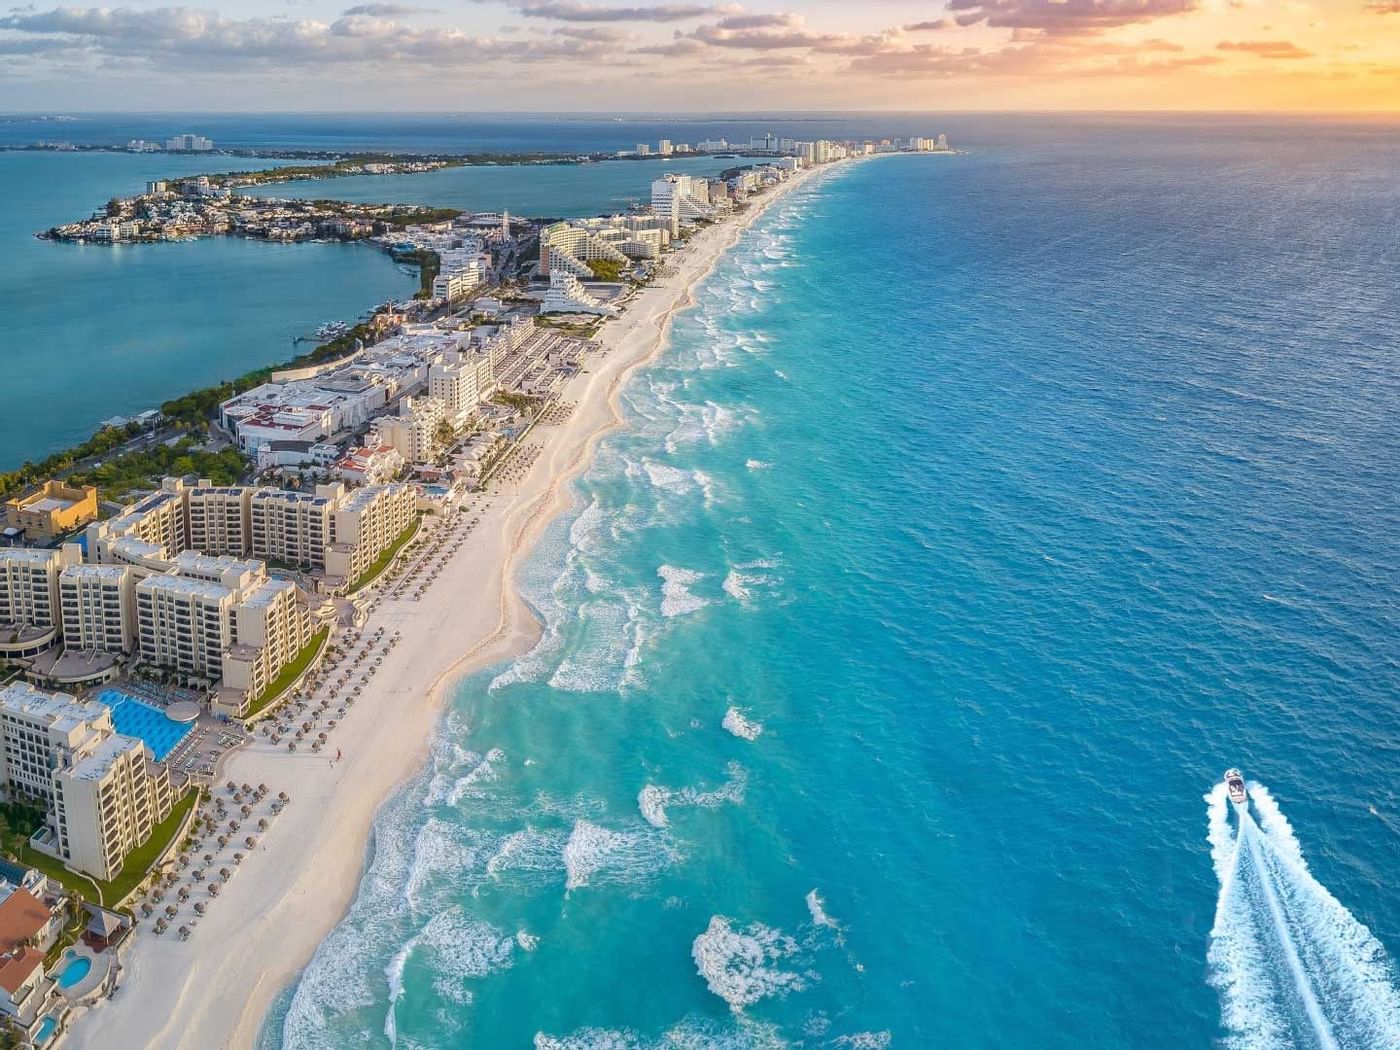 Aerial view of Aqua Beach Resort Cancun near Fiesta Americana